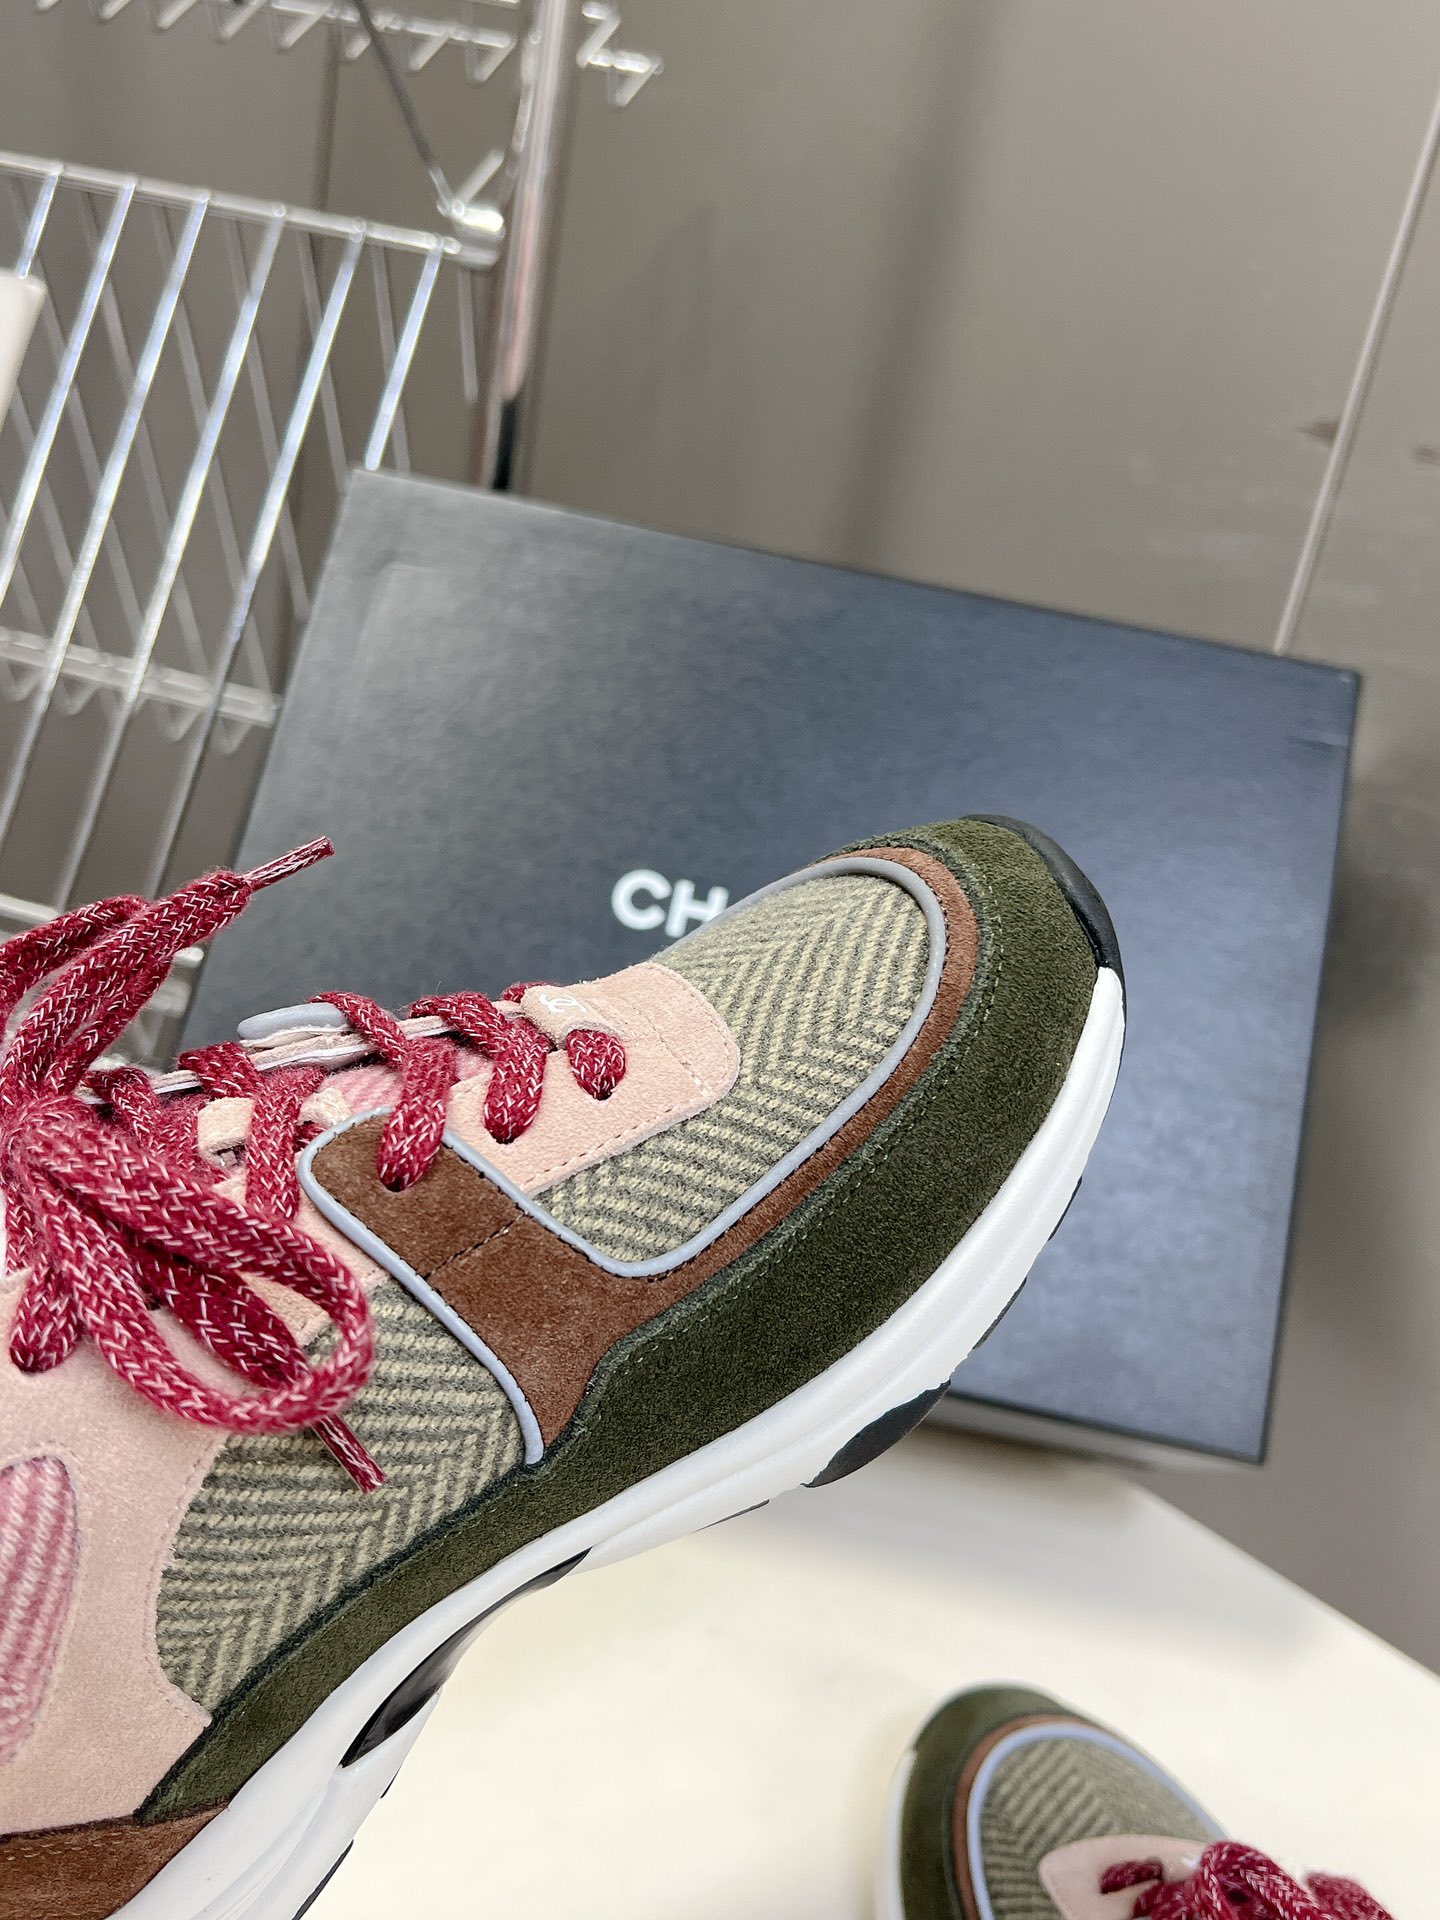 CHANEL经典运动鞋超级网红系！超多网红上脚专柜超火️️香奈儿的世界一直是女生梦寐以求的简约的隔板设计